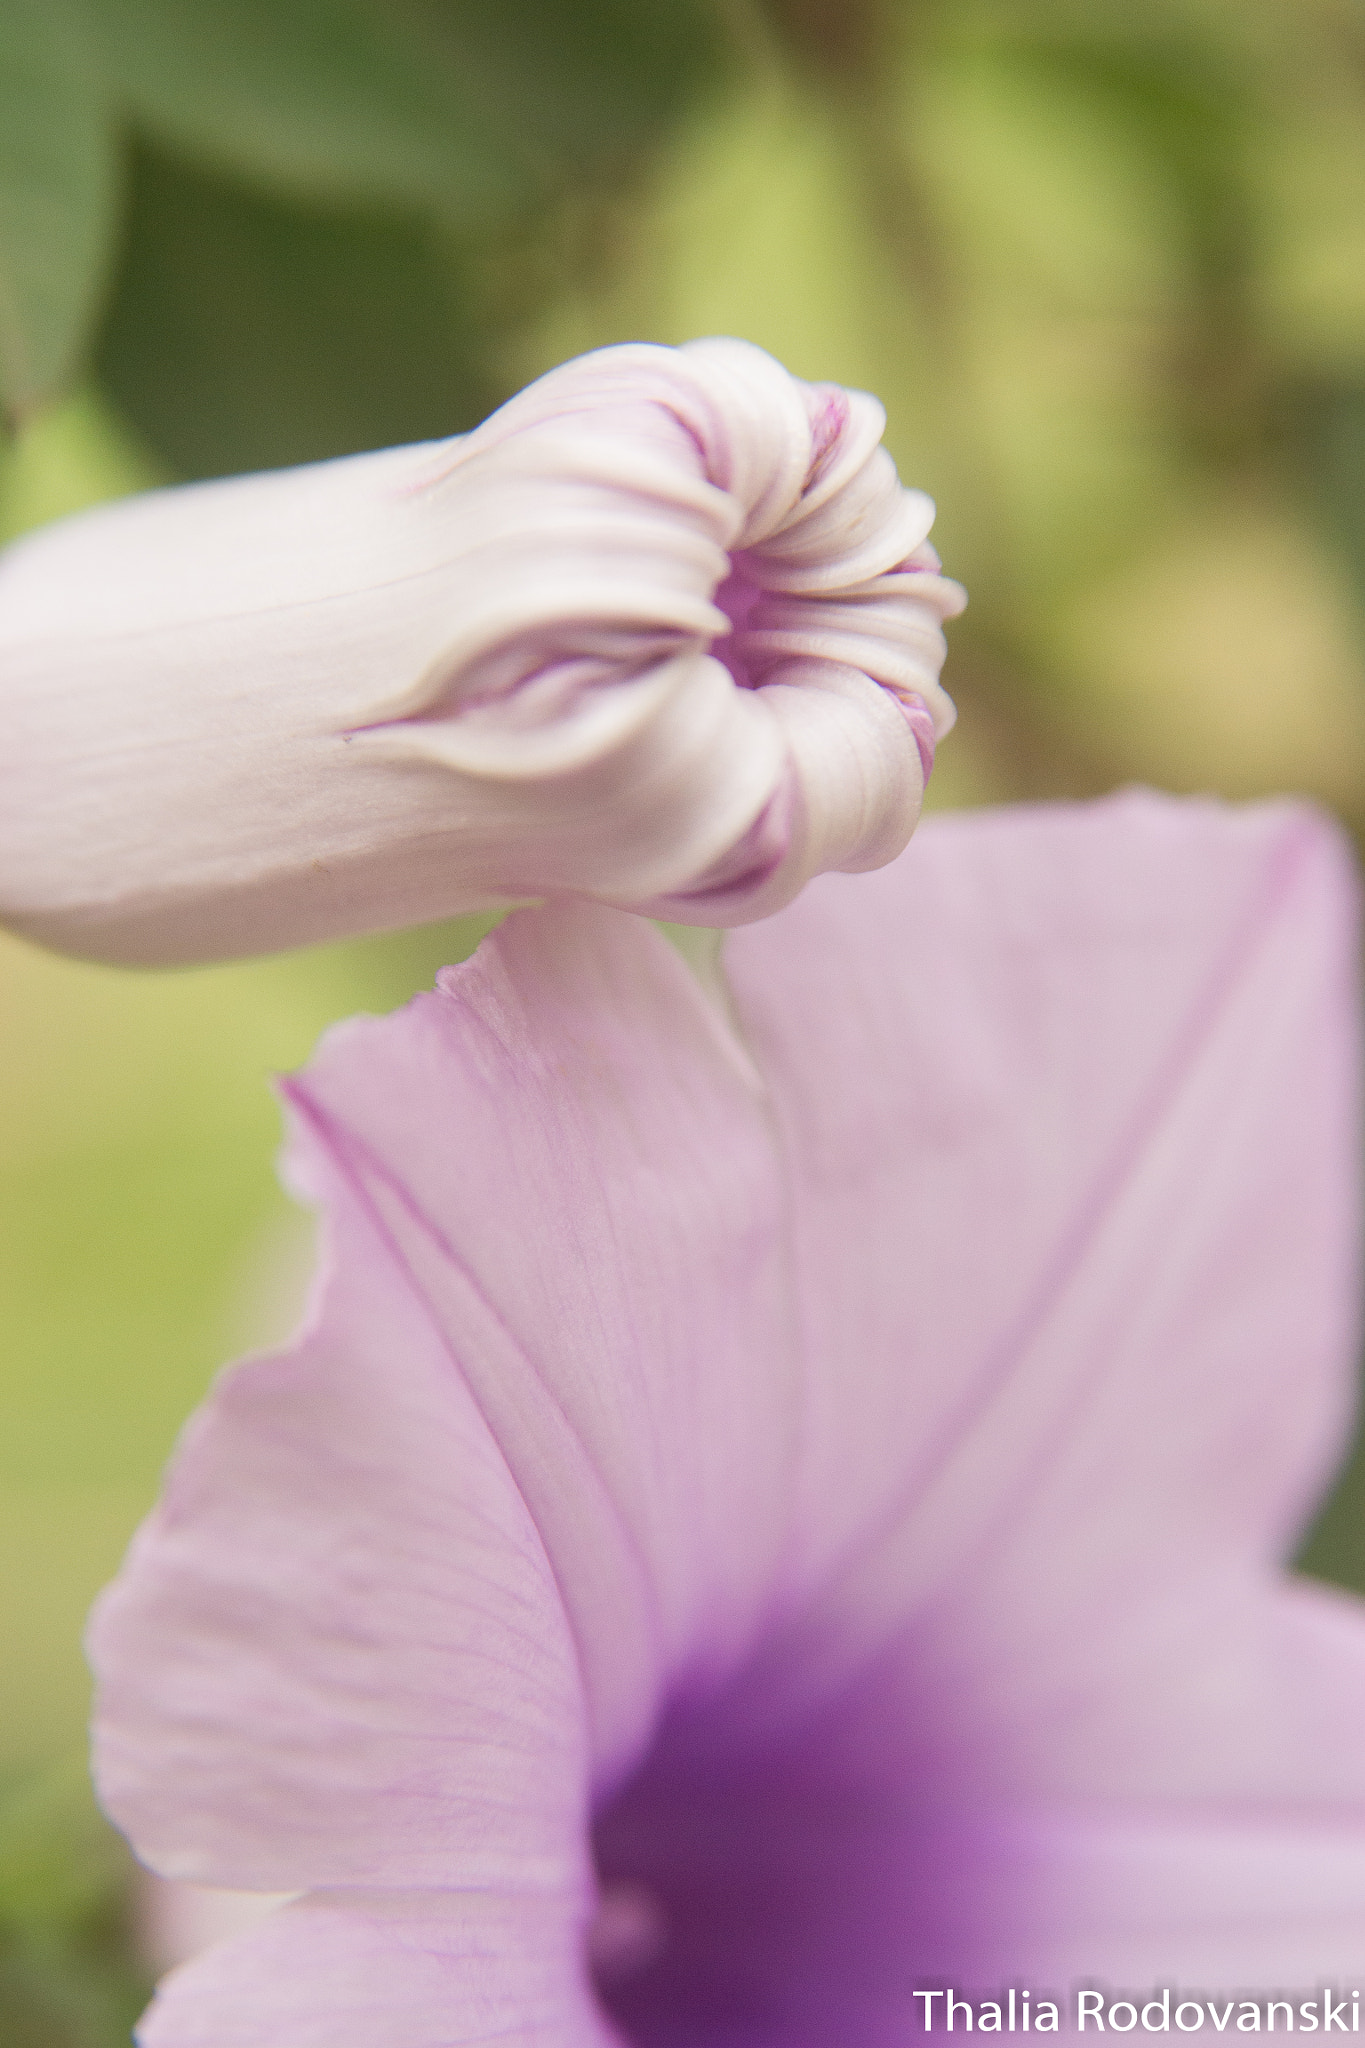 Nikon D3100 + AF Zoom-Nikkor 28-105mm f/3.5-4.5D IF sample photo. Violet flowers photography